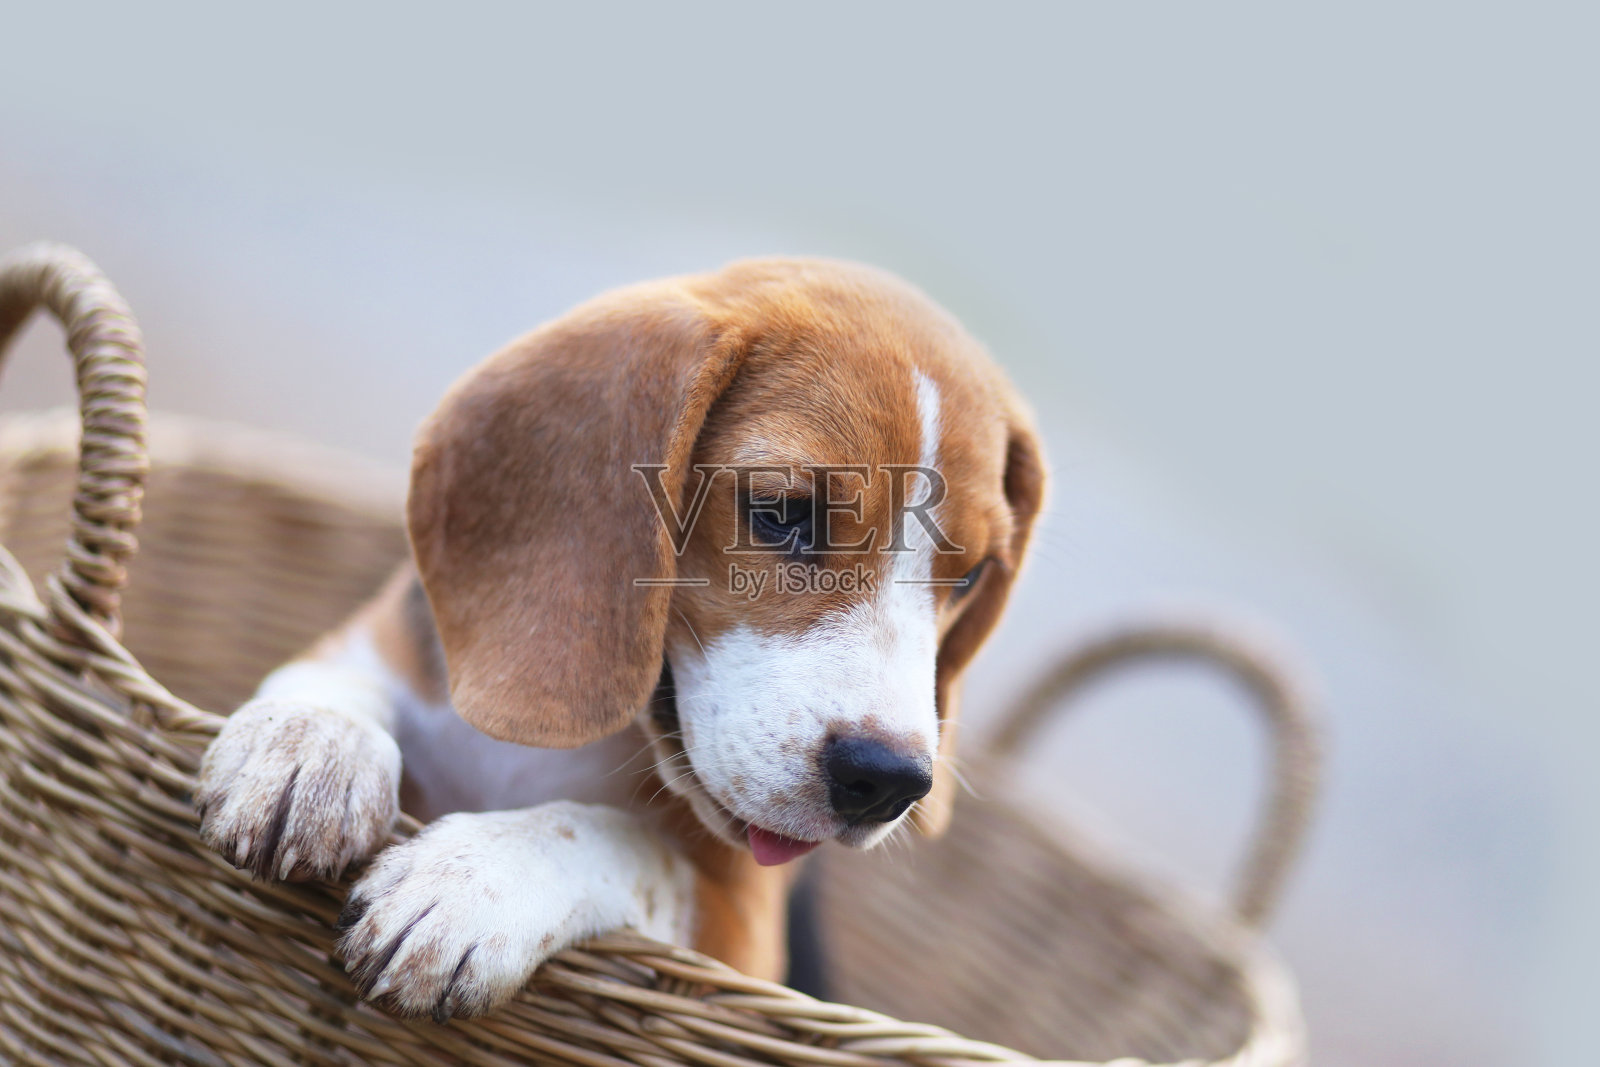 一个小猎犬狗躺在柳条篮子里的特写，它的手抓住了篮子的边缘。照片摄影图片